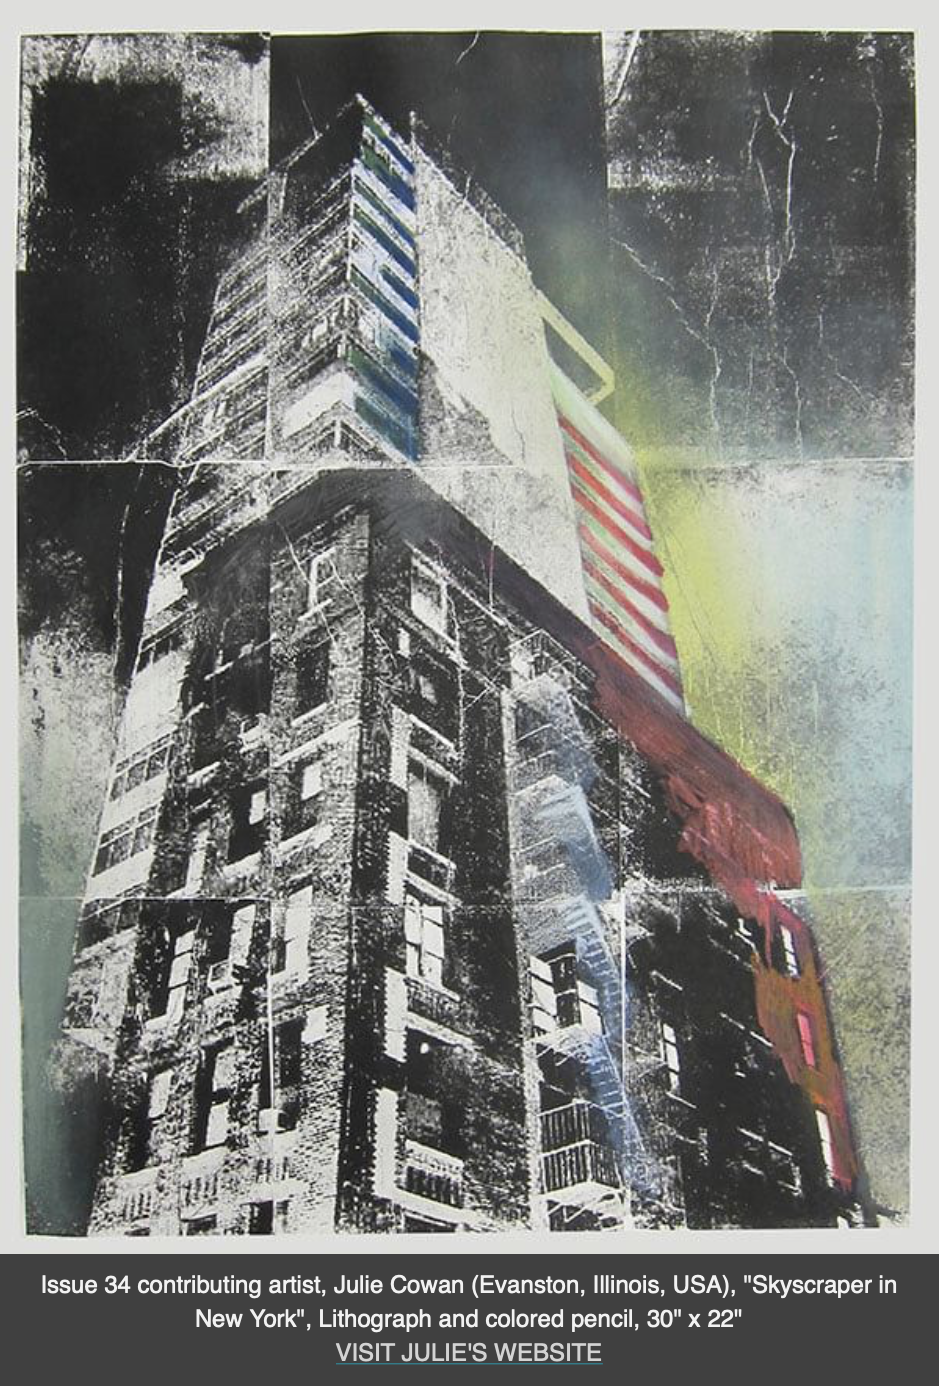 Skyscraper, lithograph in "The Hand" magazine